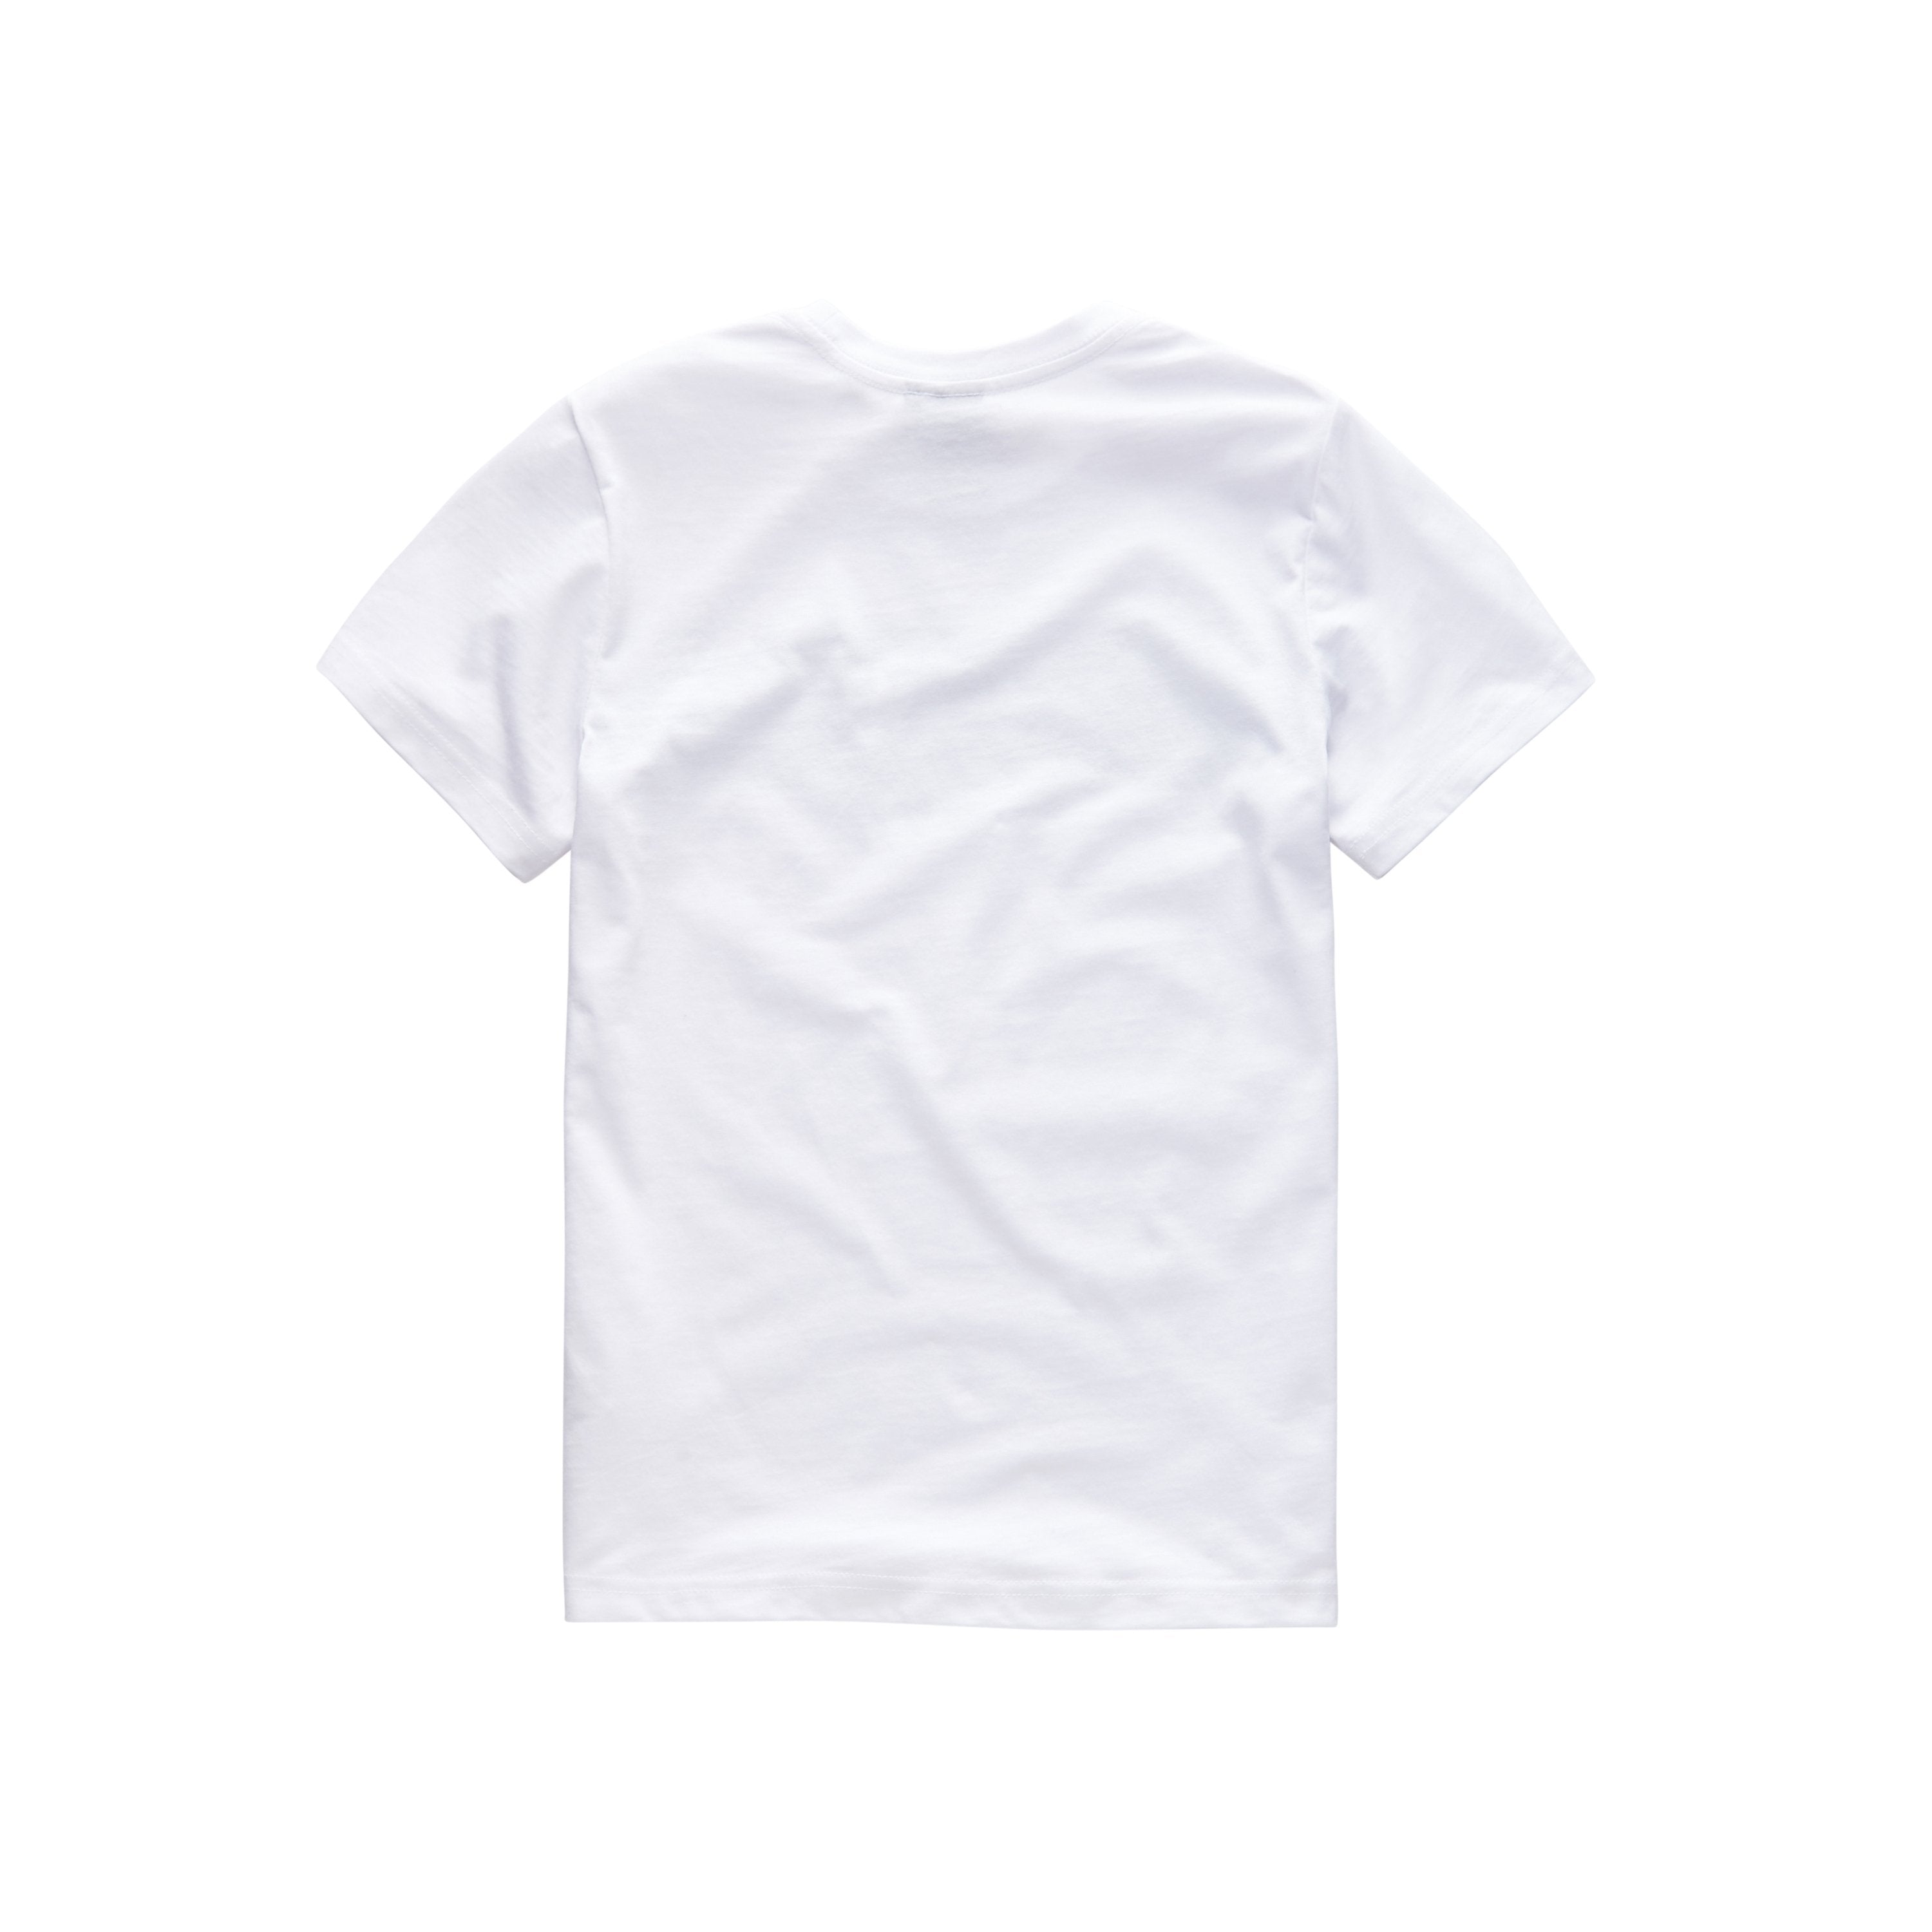 Jongens Tee Shirt van G-Star Raw in de kleur White in maat 128.